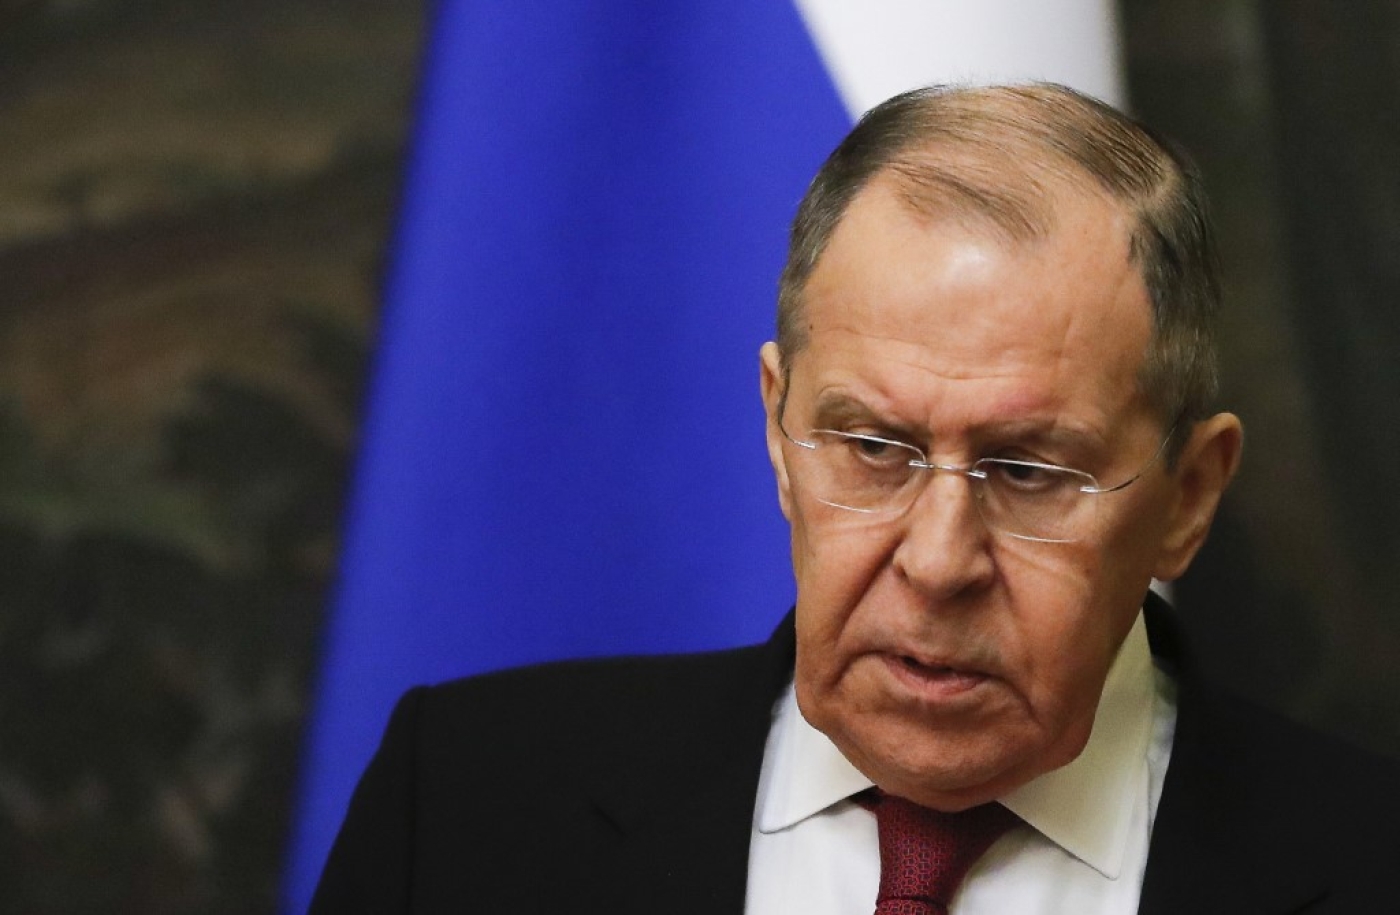 Le ministre des Affaires étrangères de la Fédération de Russie, Sergueï Lavrov (AFP/Evgenia Novozhenina)